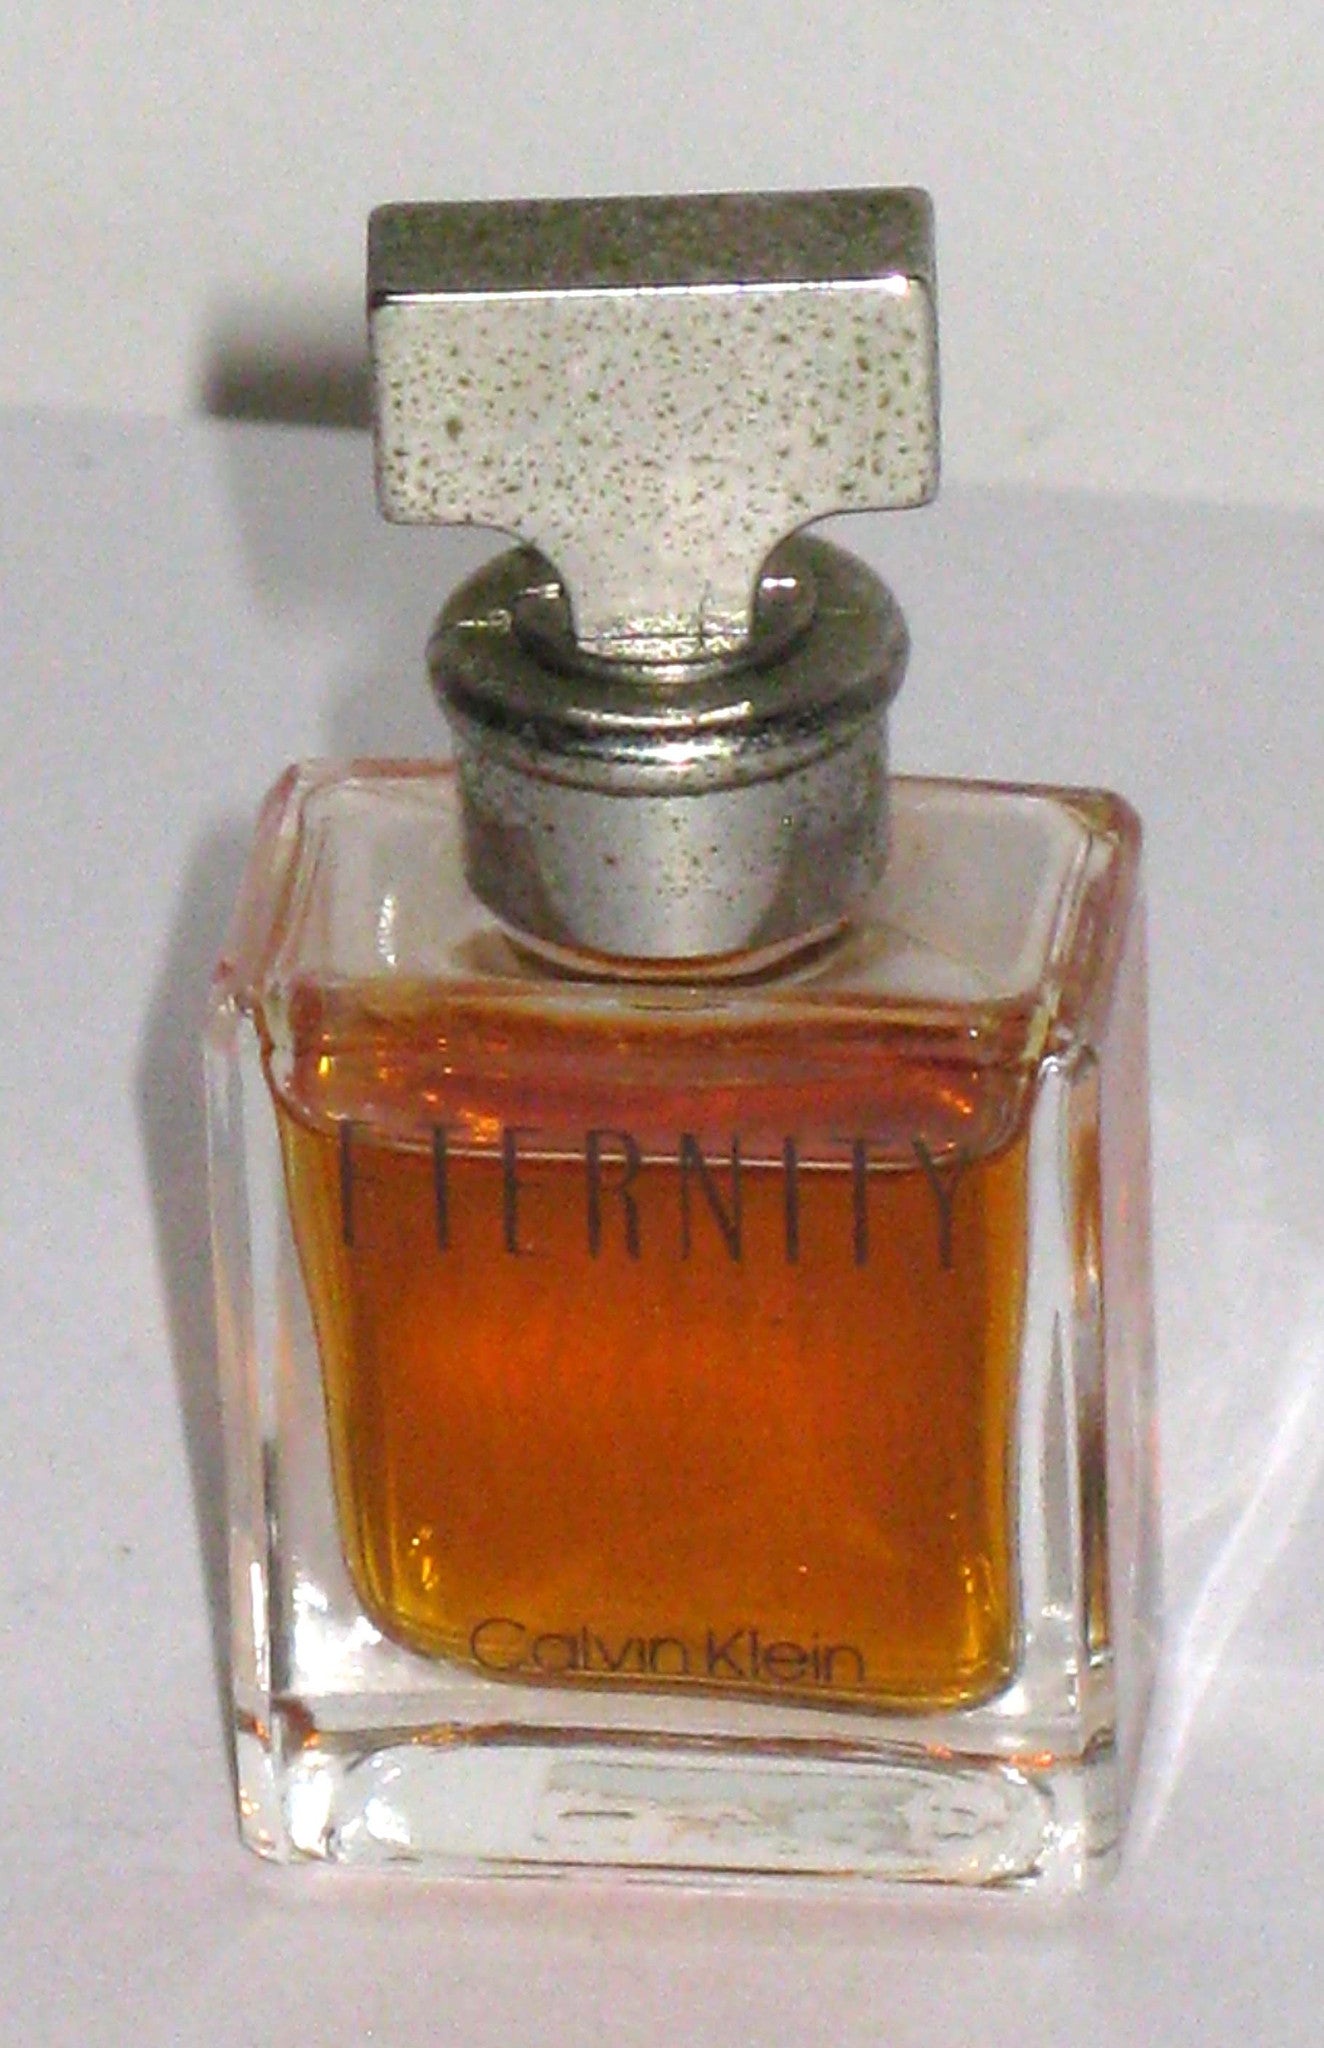 Eternity Perfume Mini By Calvin Klein